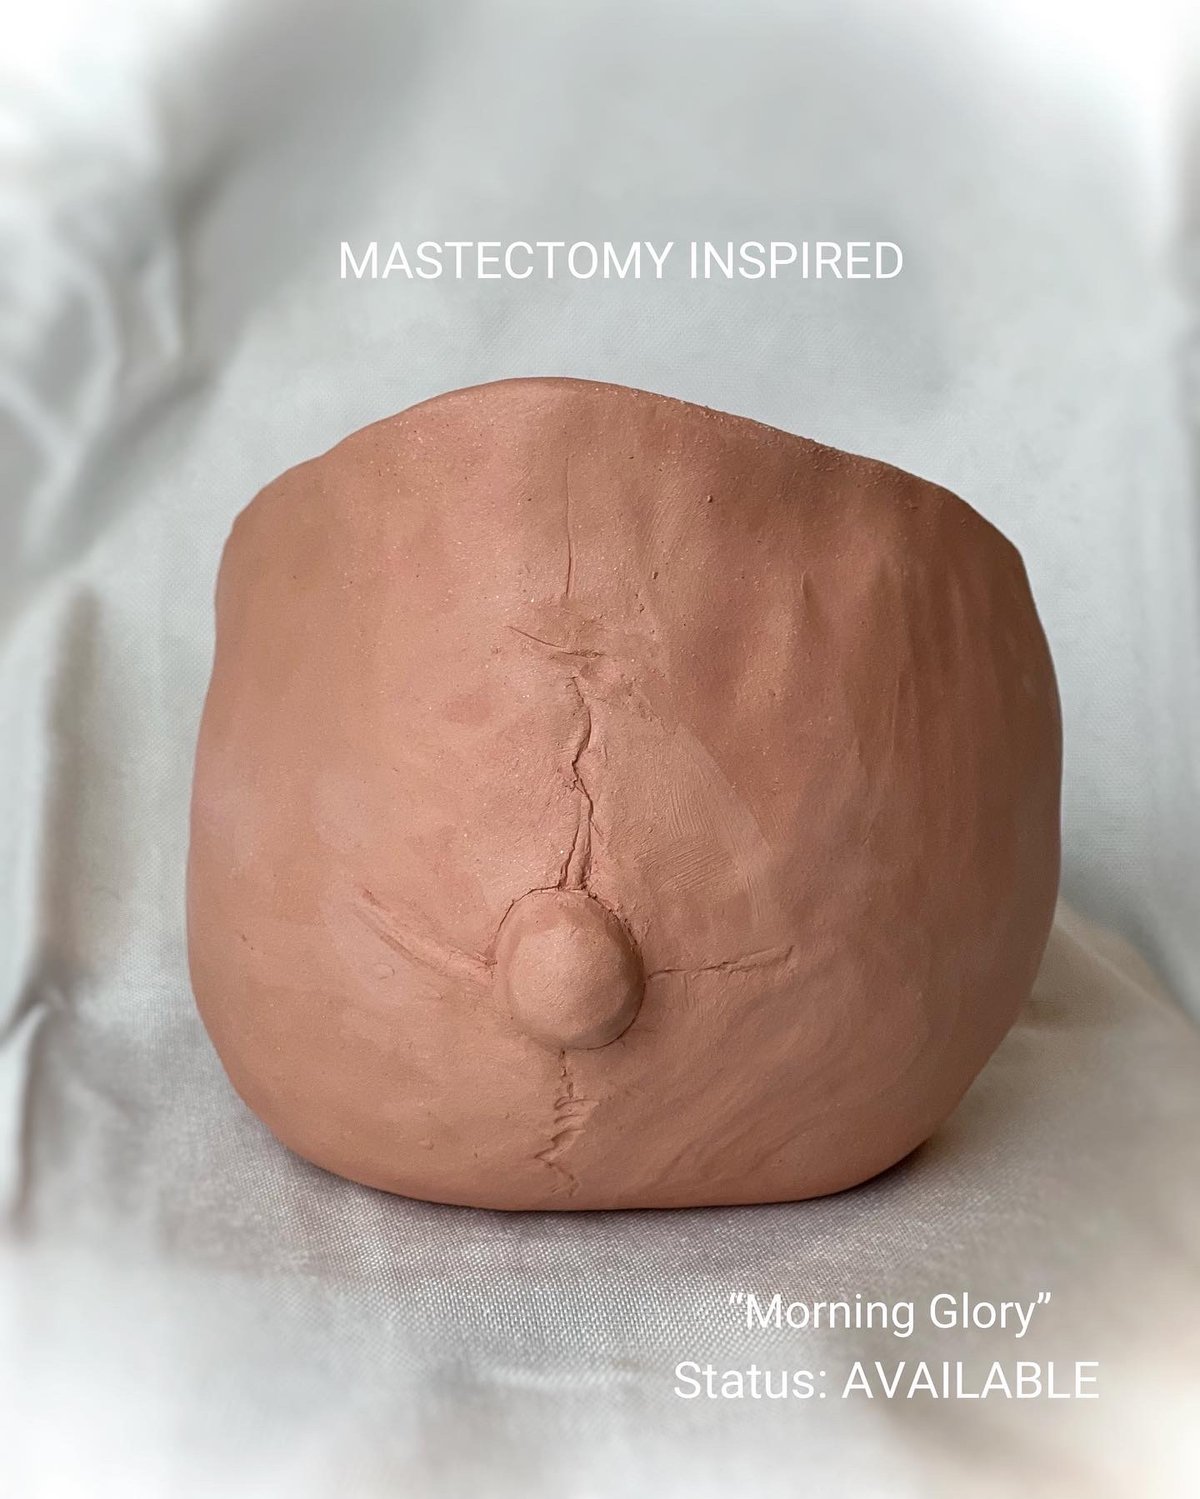 Image of "Morning Glory"-Mastectomy Inspired